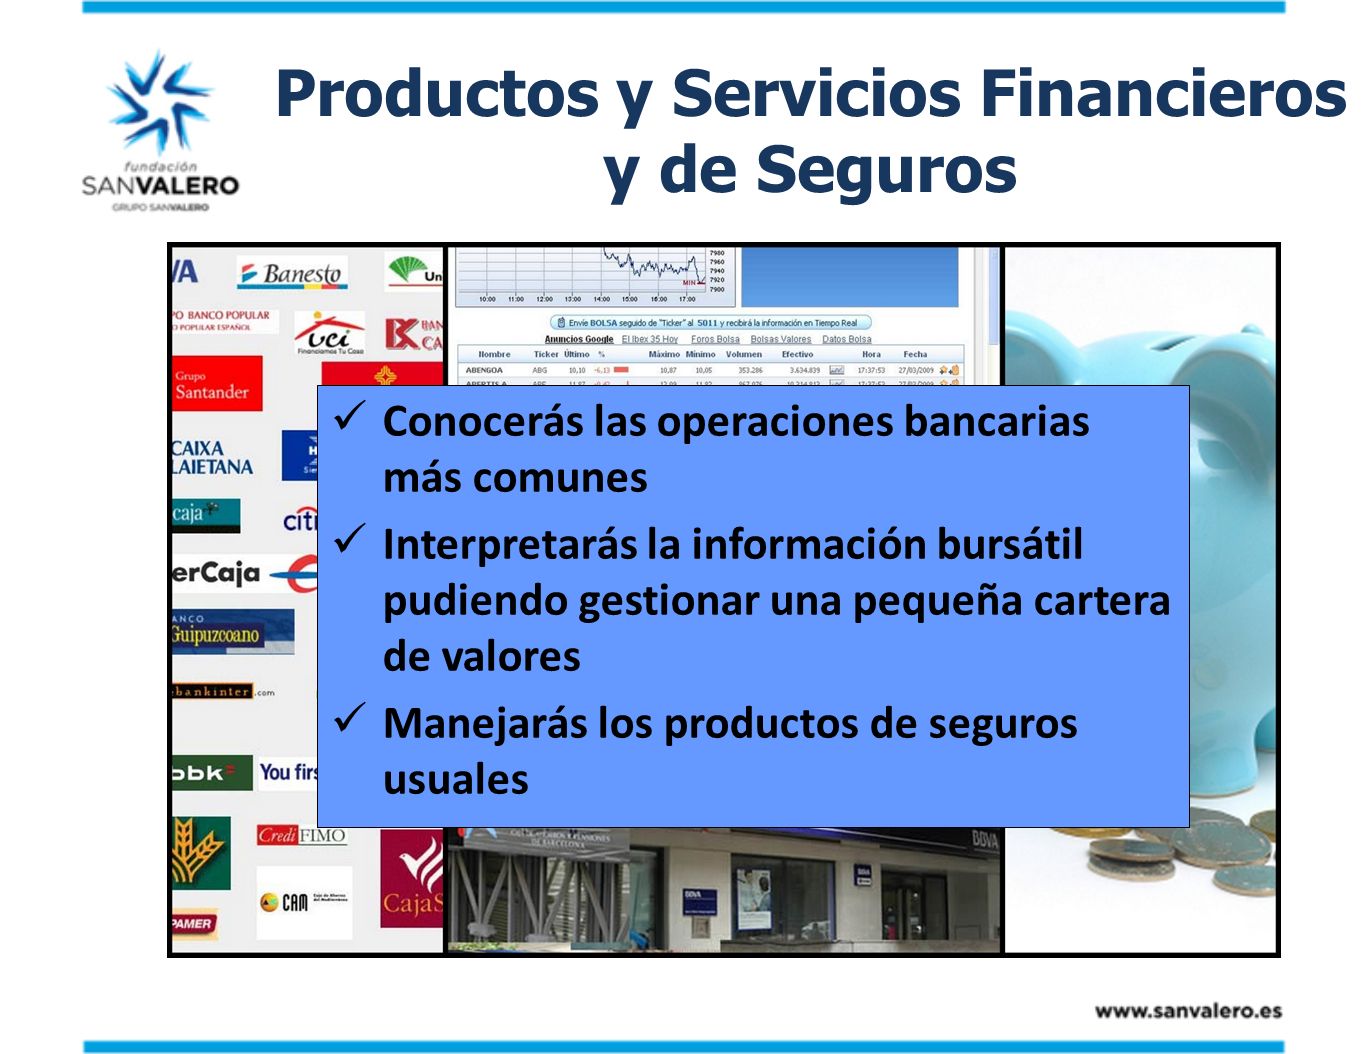 Productos y Servicios Financieros y de Seguros